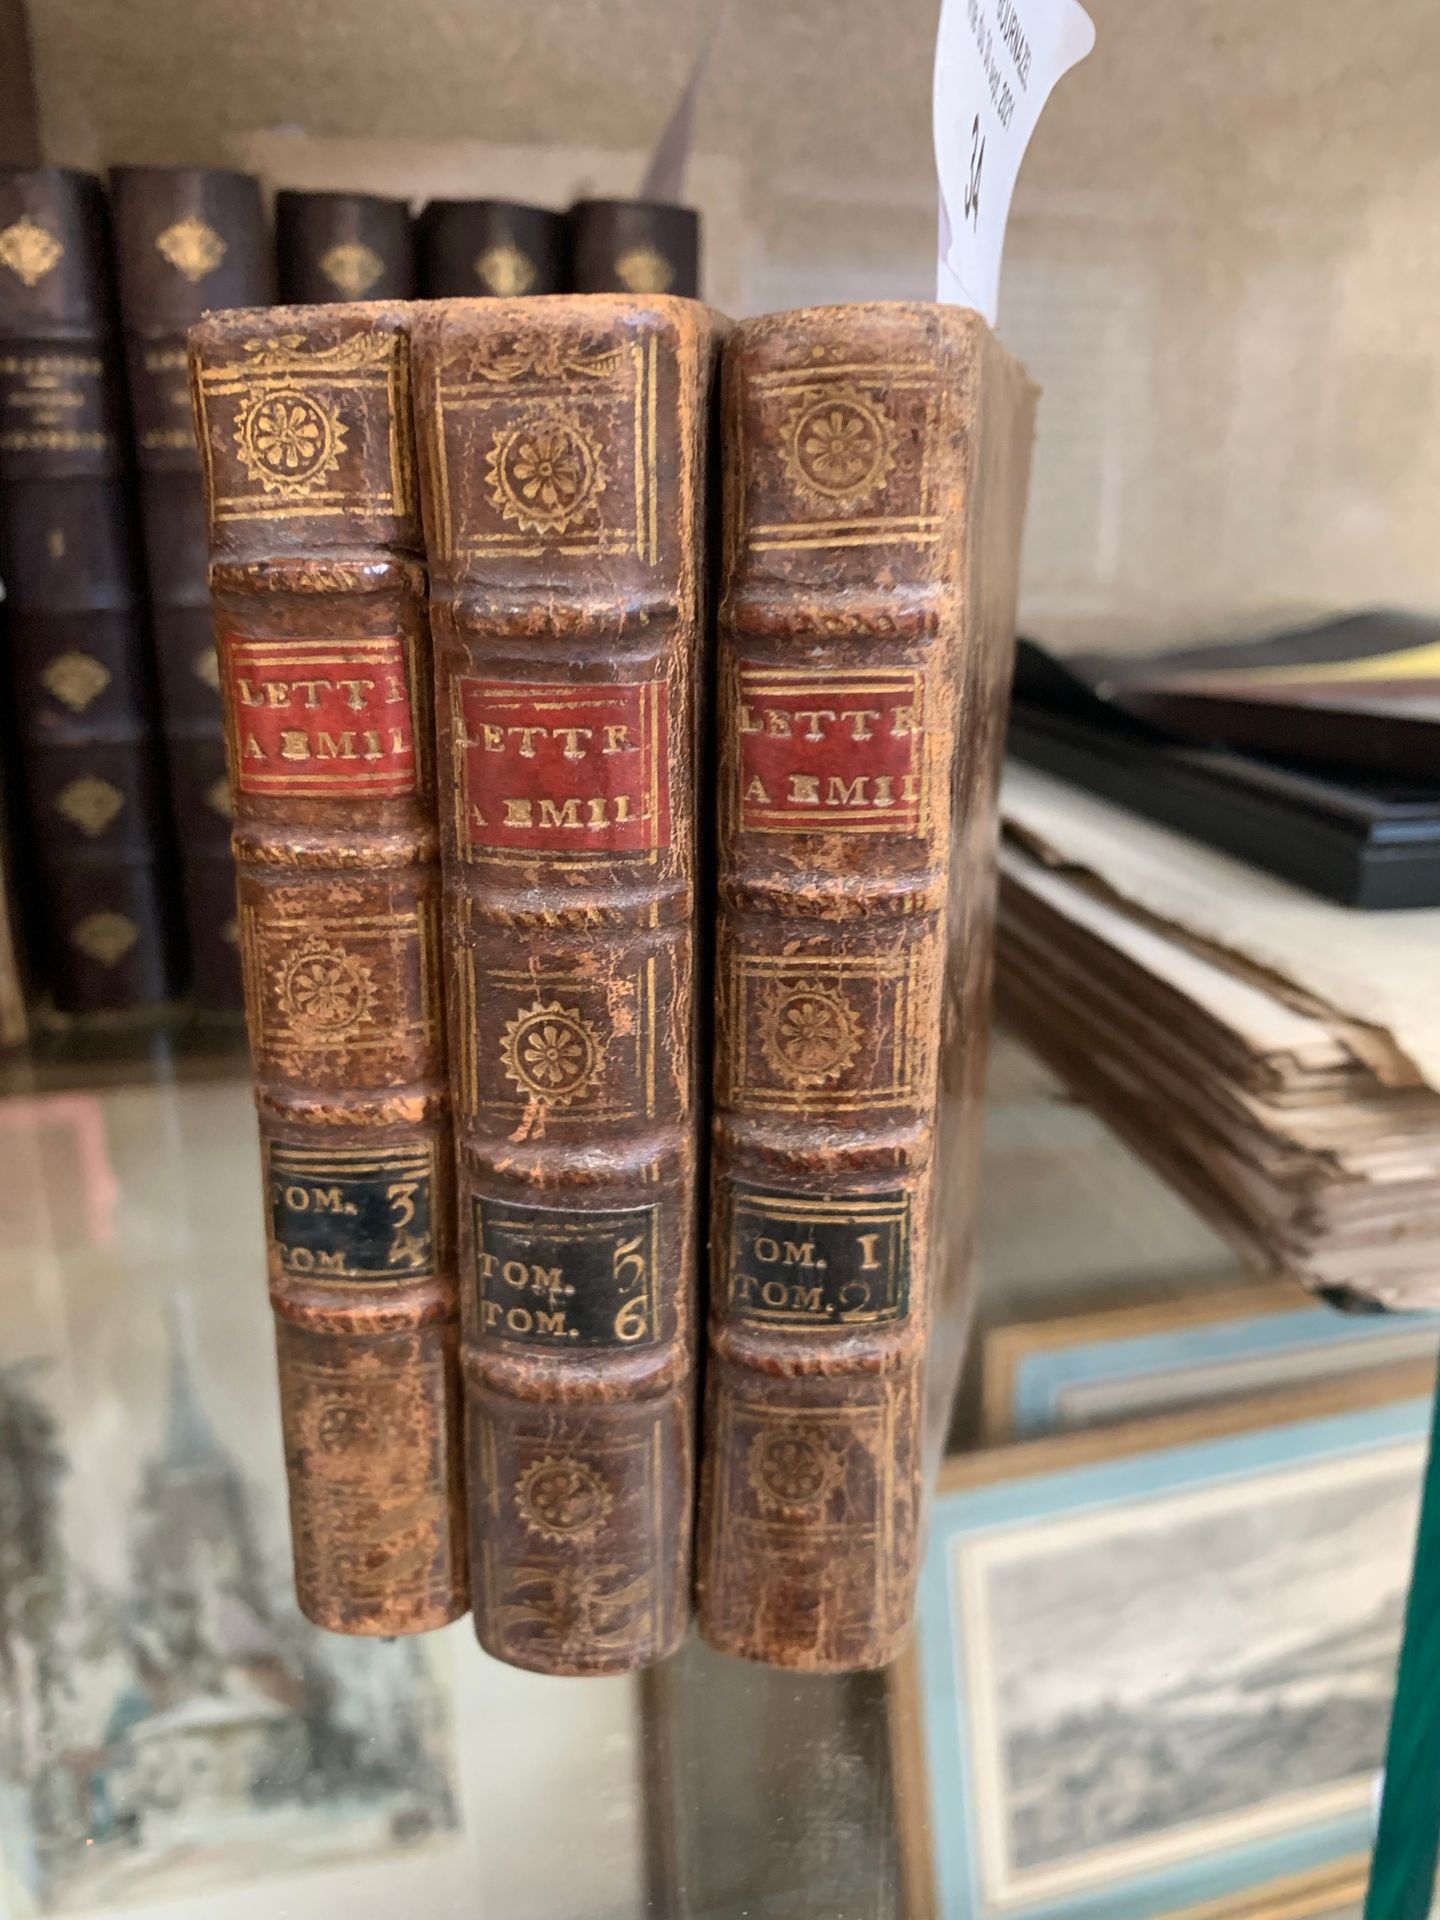 Null Desmoutier. Lettre à Emilie. Paris, Renouard, 1903. 6 tomes en 3 volumes